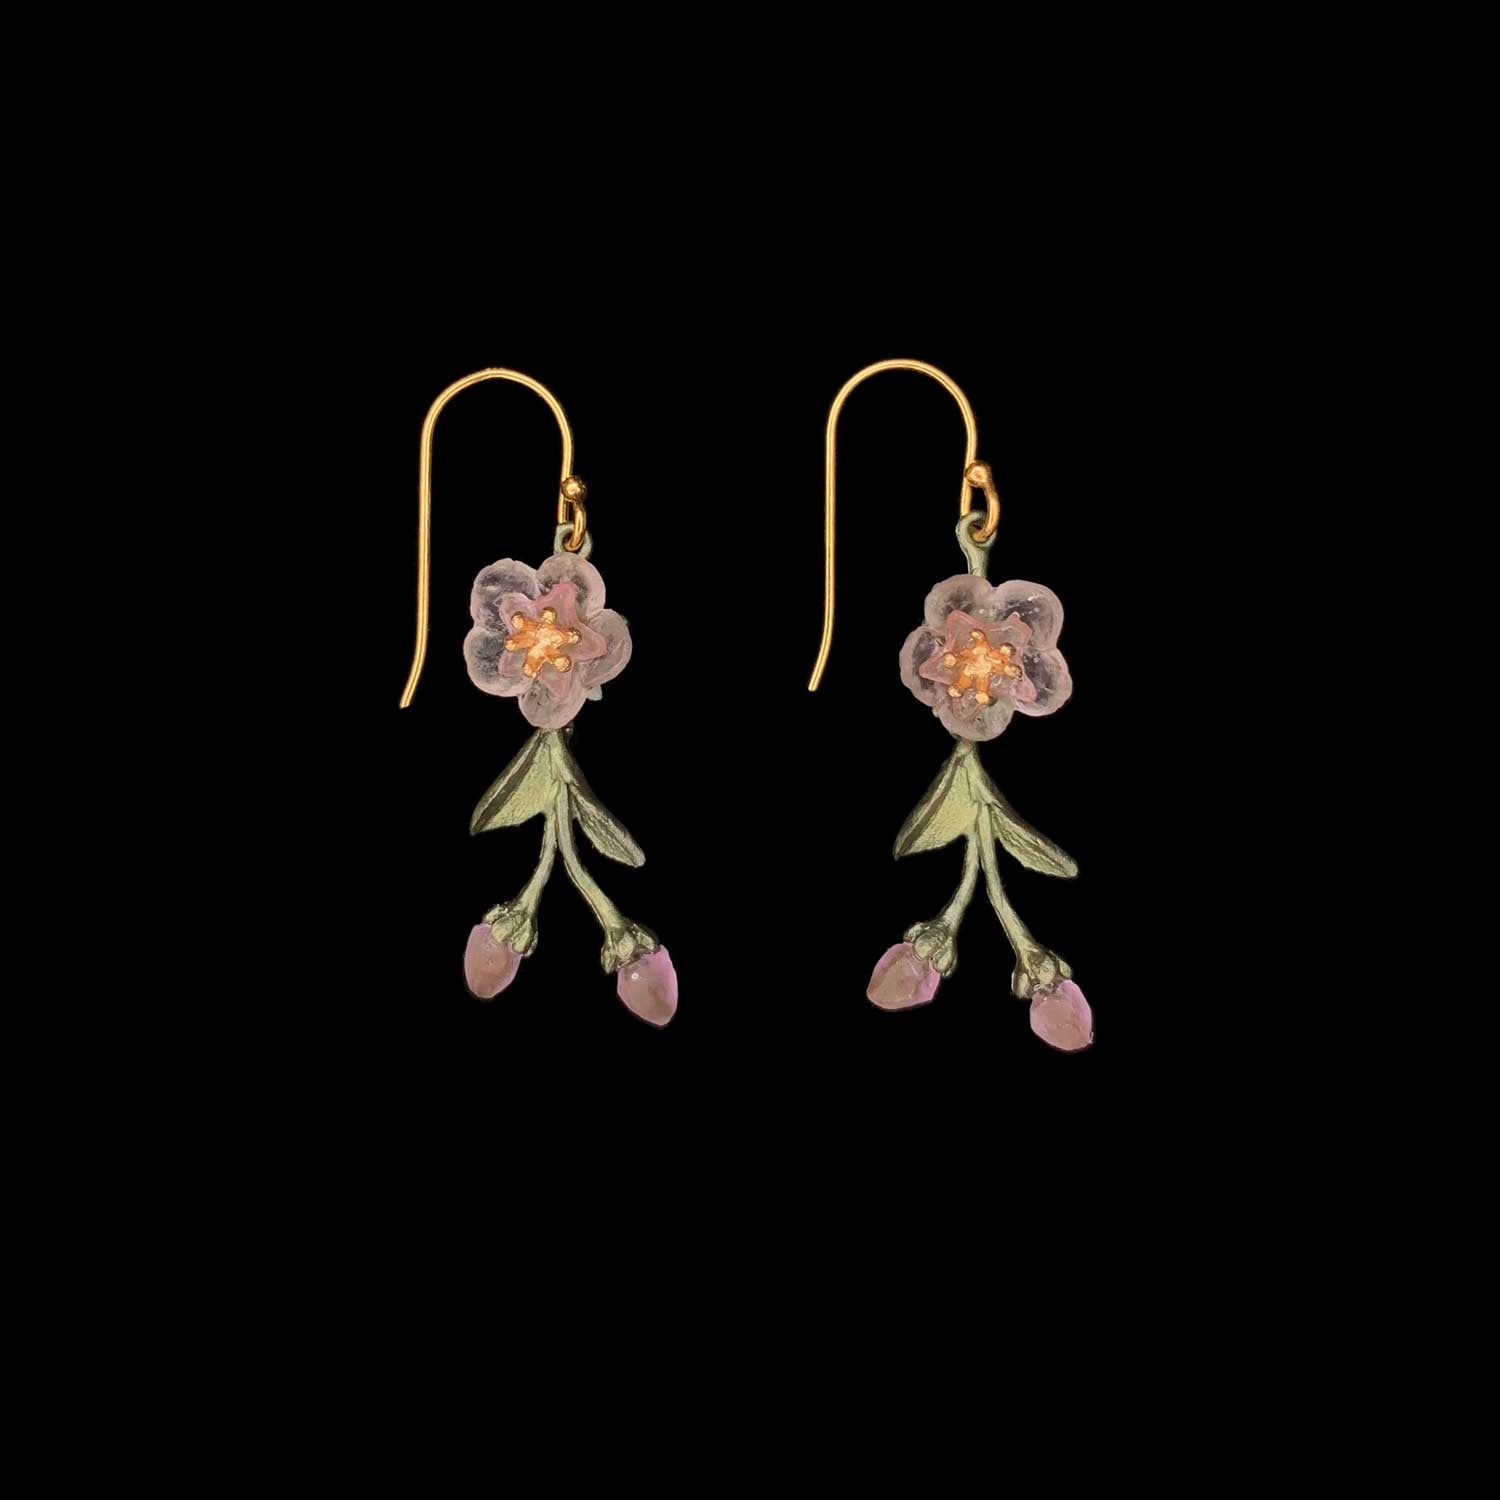 Peach Blossom Earrings - Dainty Flower Drop Wire